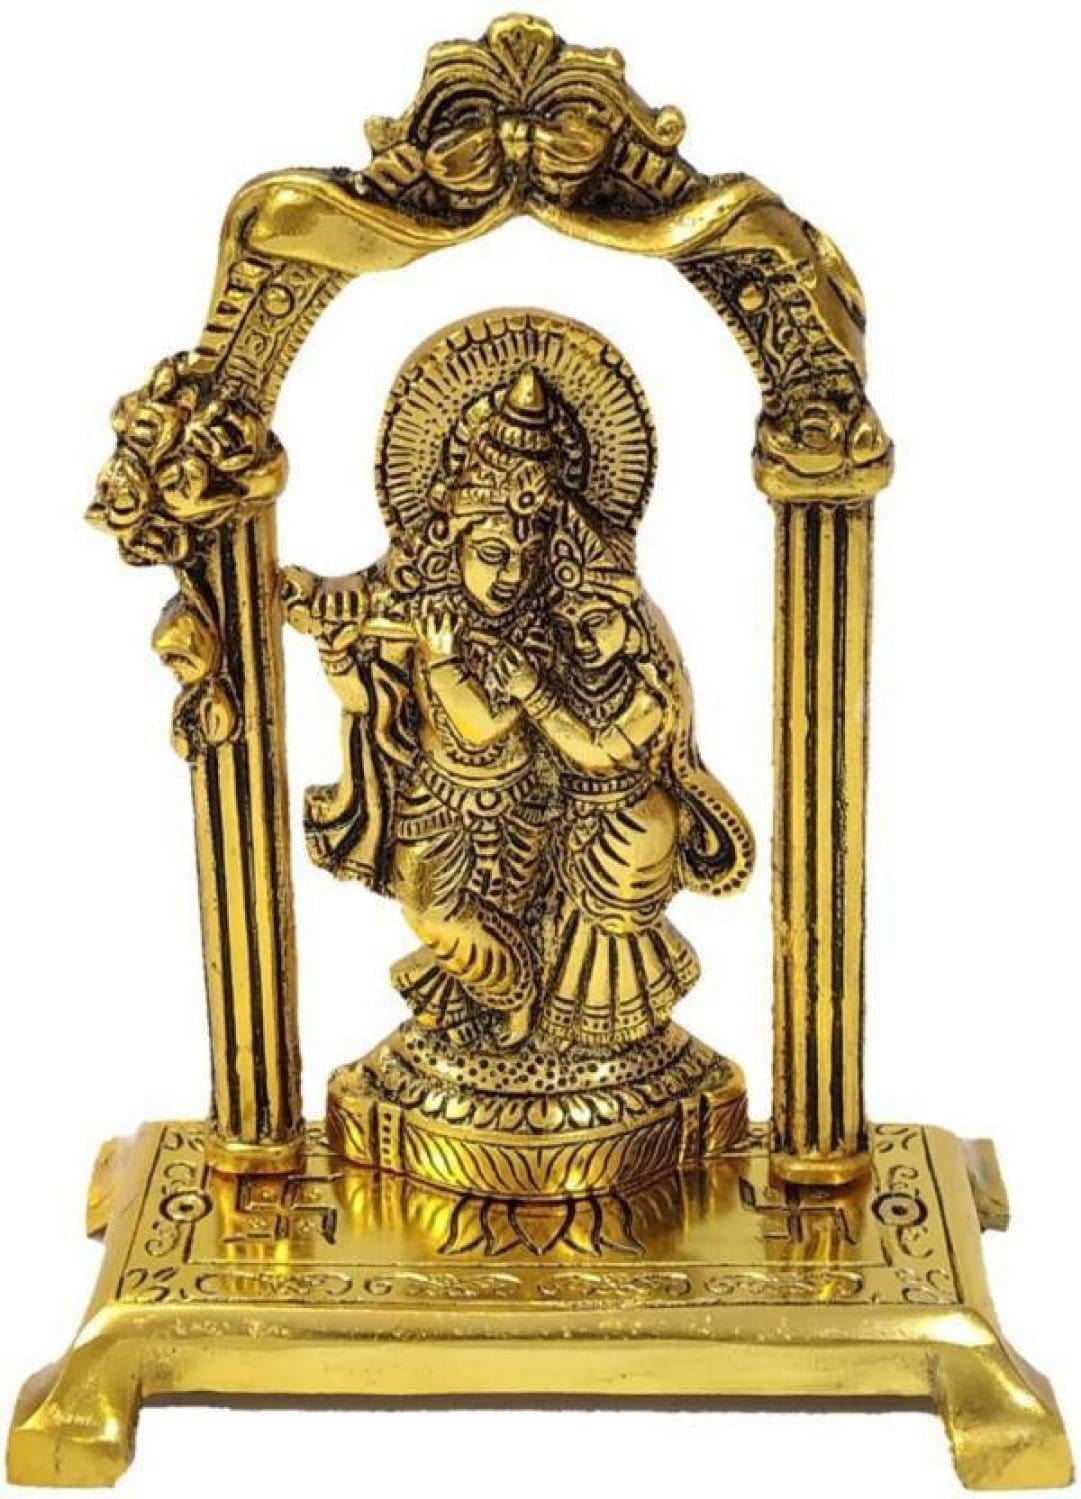 New Jaipur Handicraft Brass Showpiece Gold / Standard / Radha Krishna New Jaipur Handicraft Metal Radha Krishna statue☀🕉 / God Statue🕉👼 / Radha Krishna Idol📿 / God Idol 🛐 / Decorative Showpiece💥 / Gifting Showpiece 🎁🎀